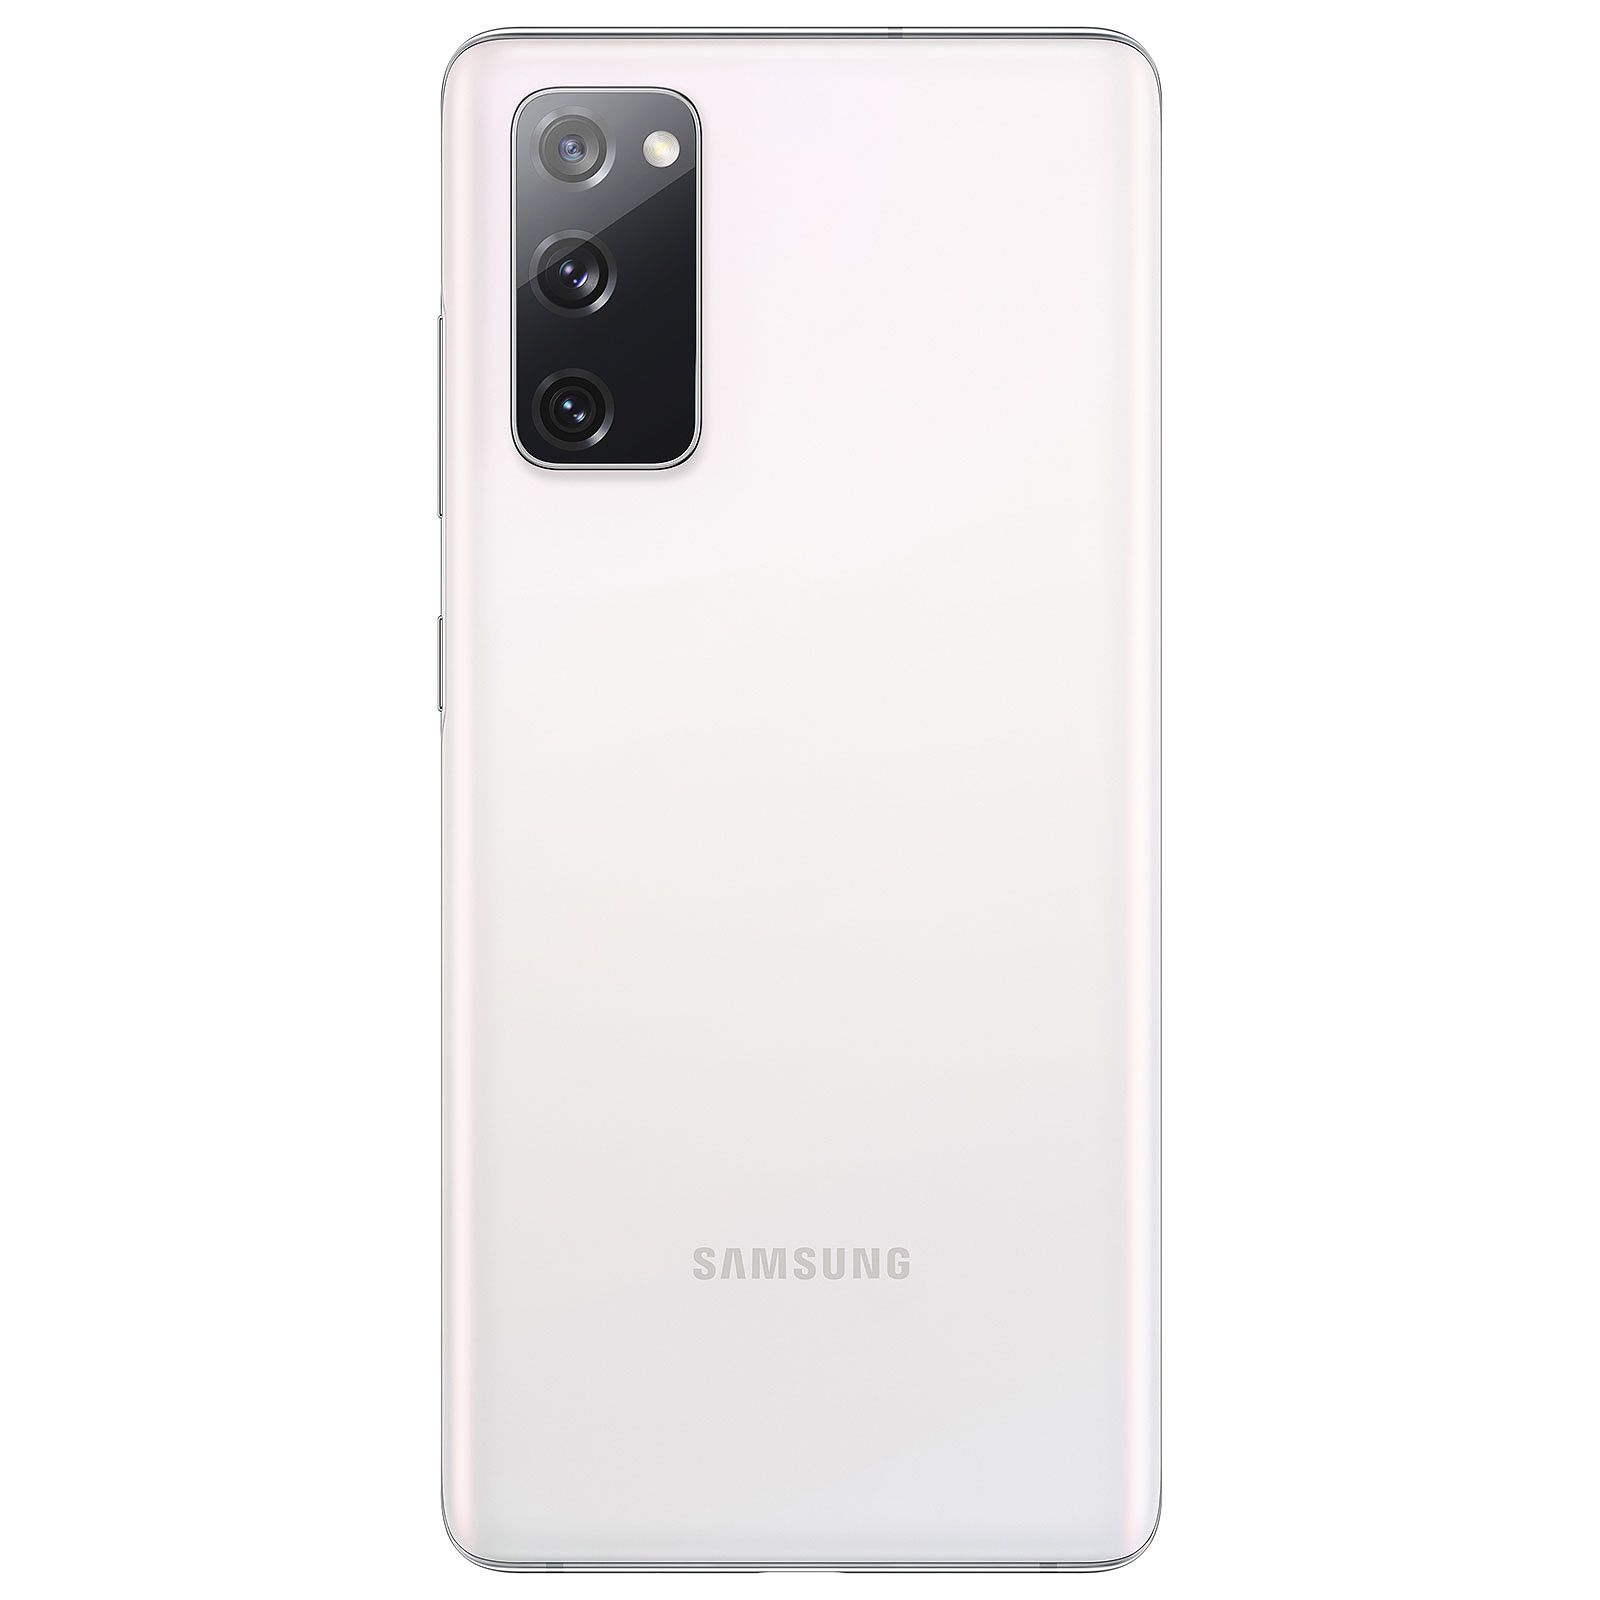 SAMSUNG REFURBISHED (*) Galaxy S20 GB 128 FE weiß 128 GB 5G